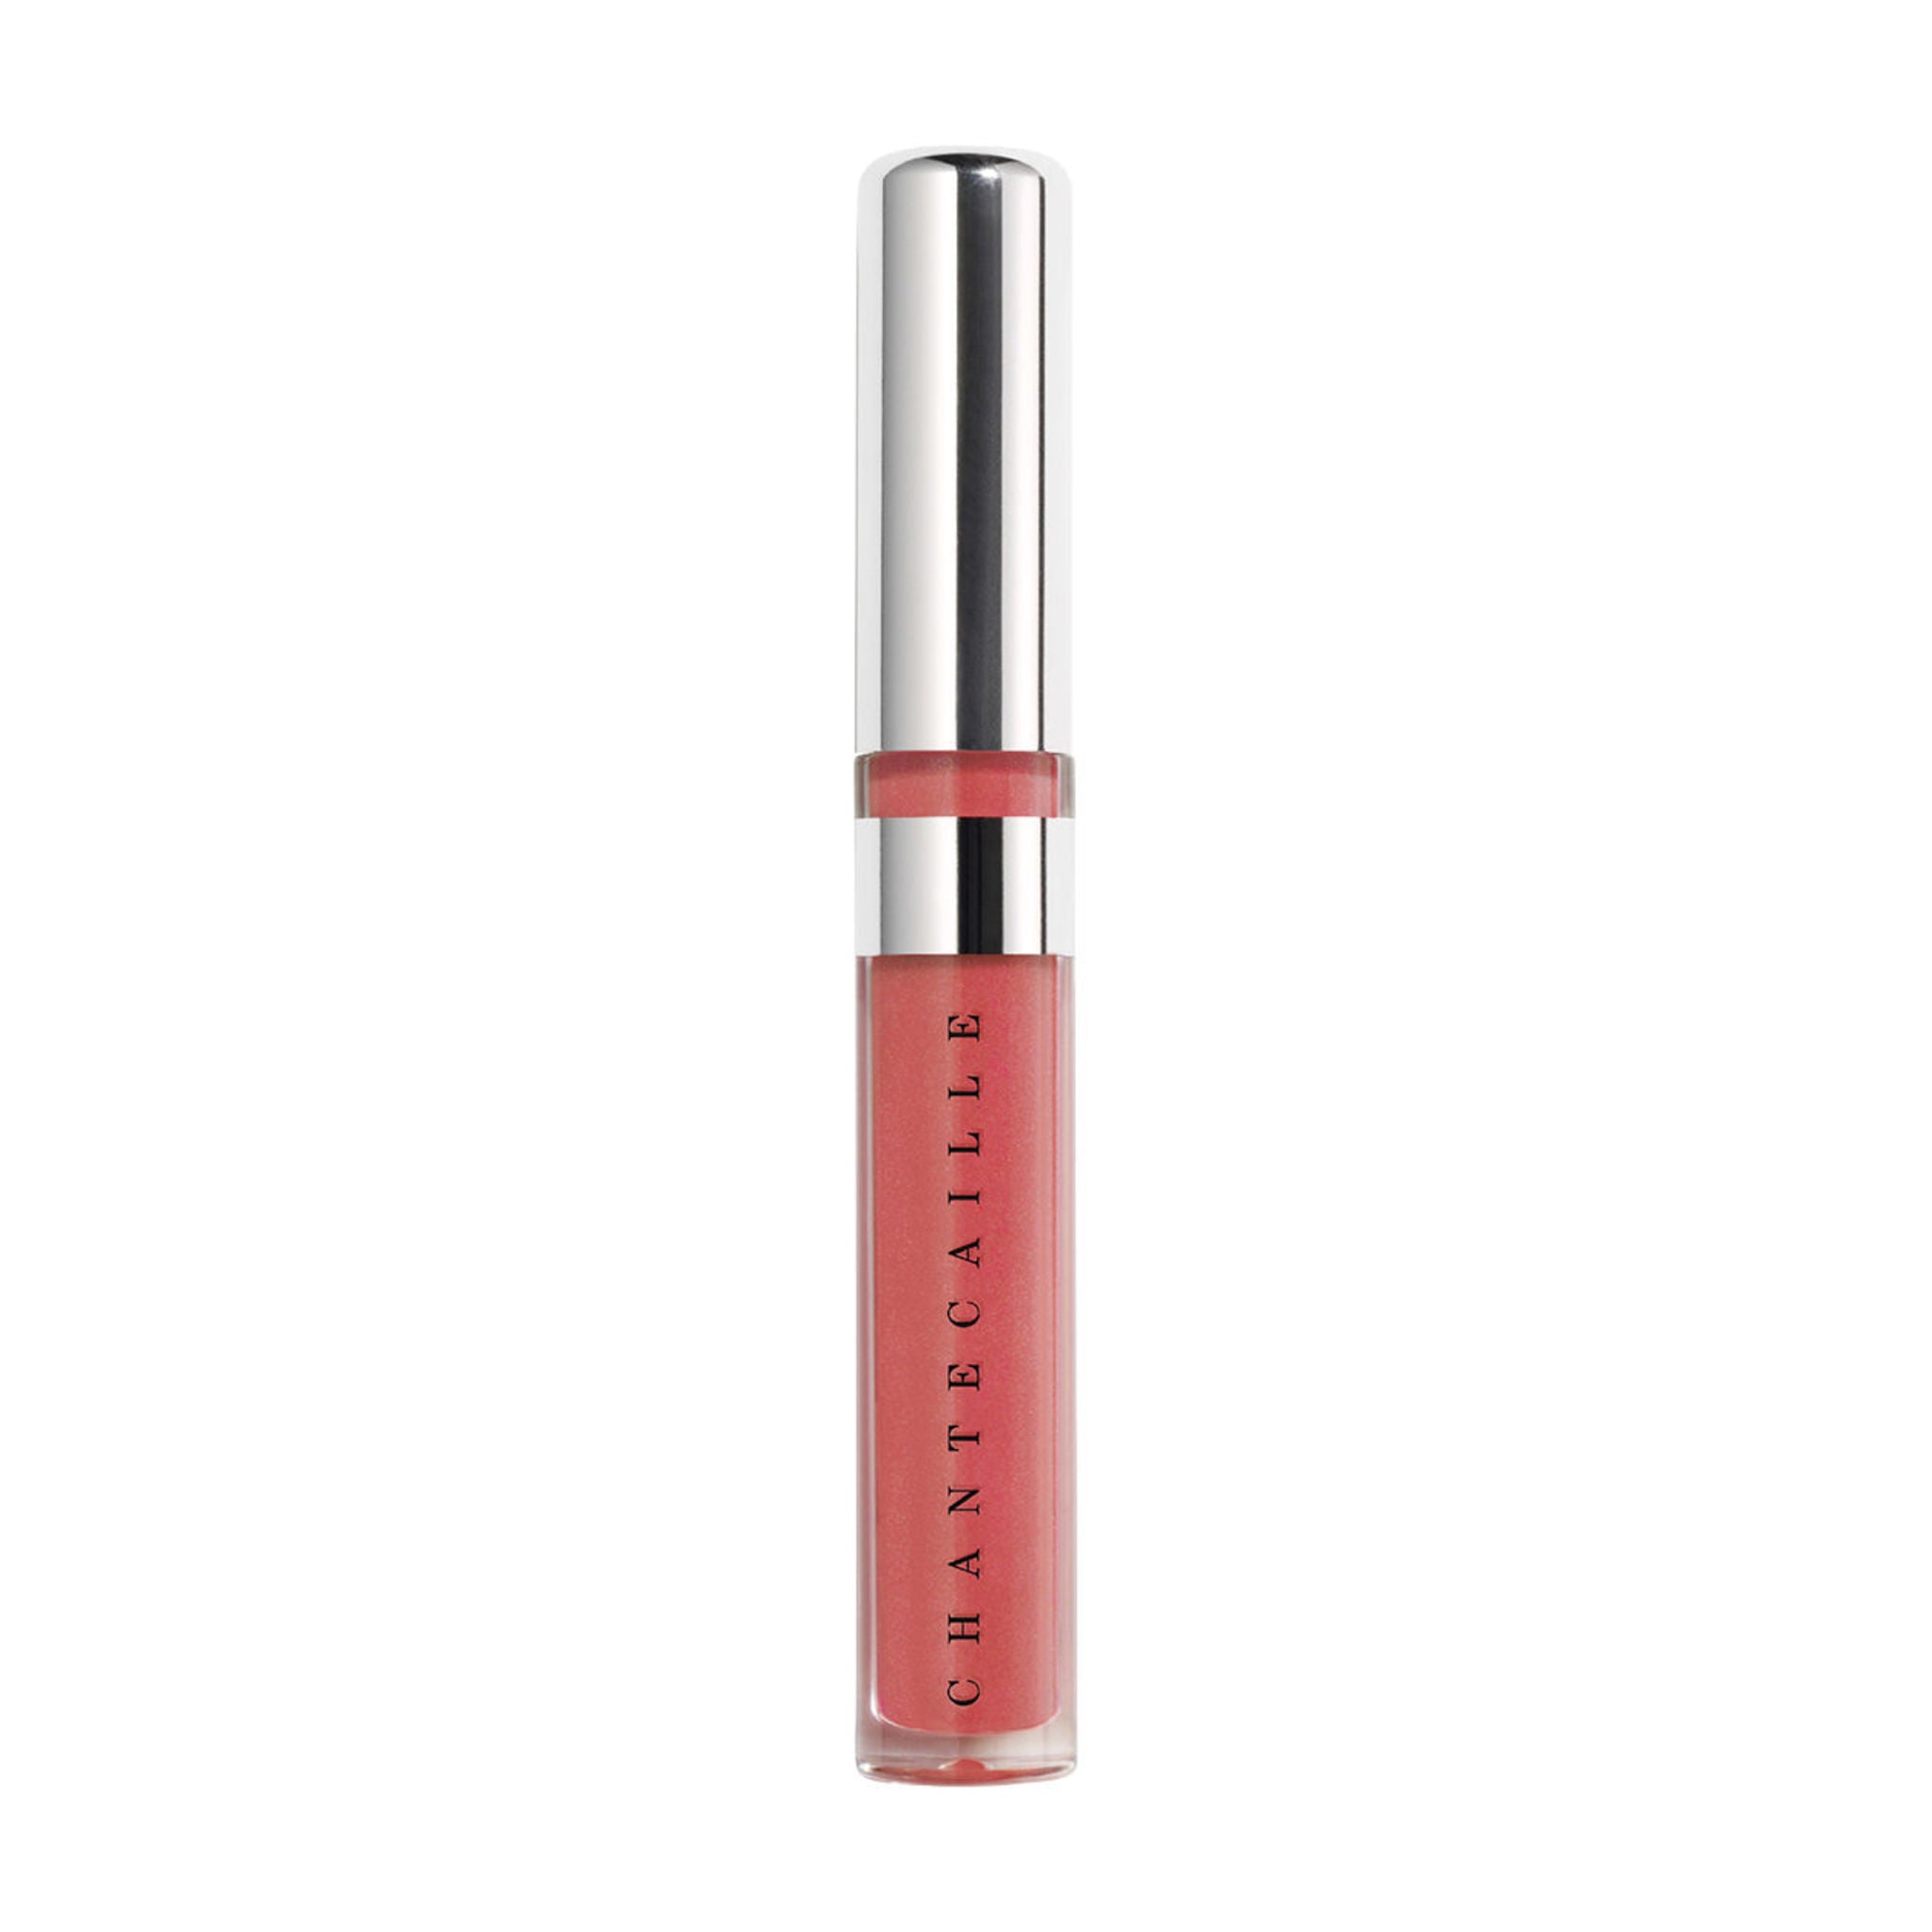  Sigma Beauty Lip Gloss, Brilliance - Luscious Lips